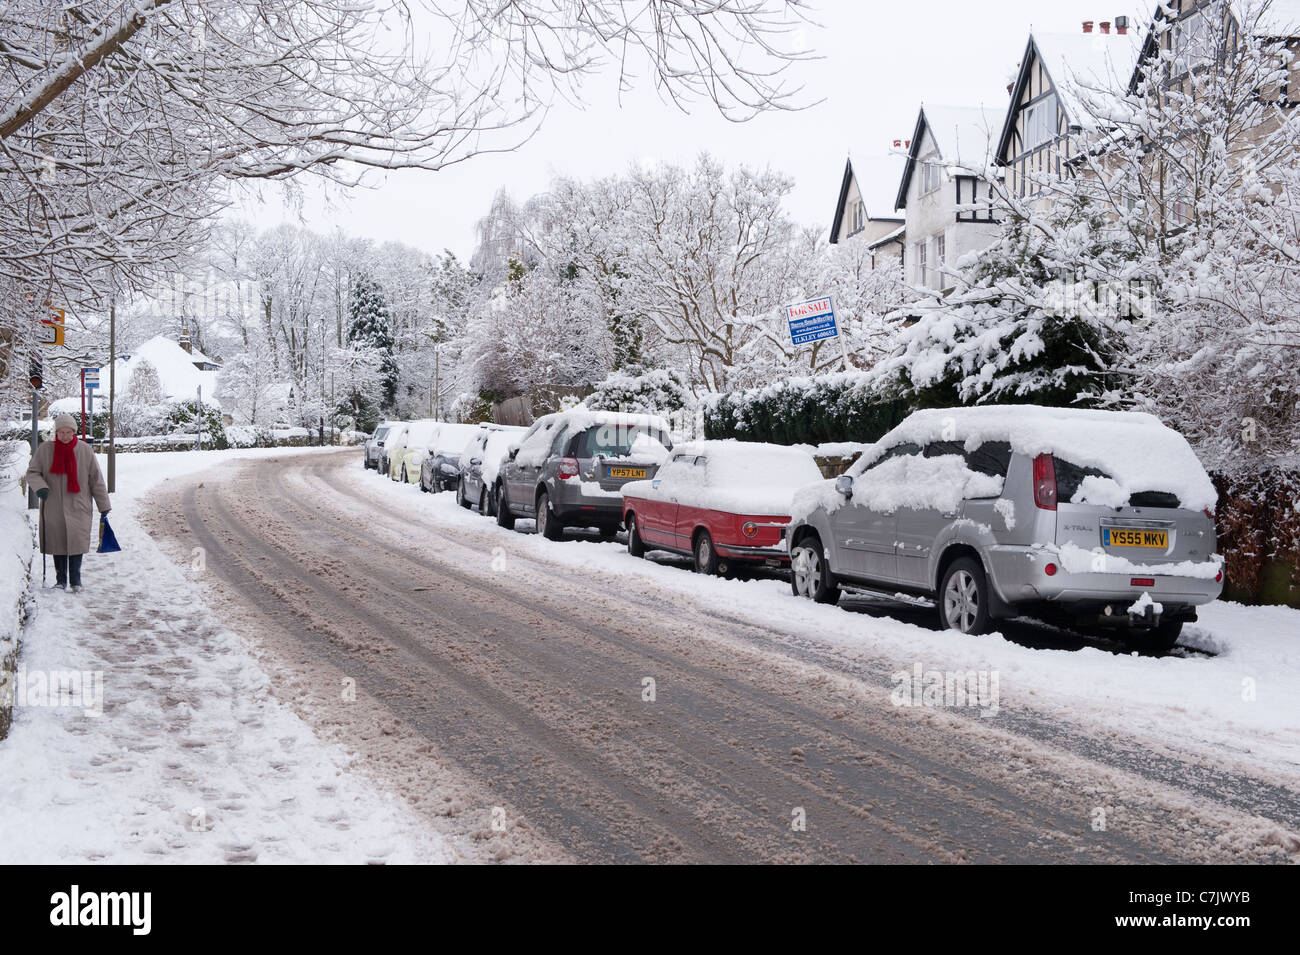 Winter Village Street (pistas sobre carreteras cubiertas de nieve, coches estacionados, paseos peatonales, huellas en el pavimento) - Burley en Wharfedale, Inglaterra, GB, Reino Unido. Foto de stock